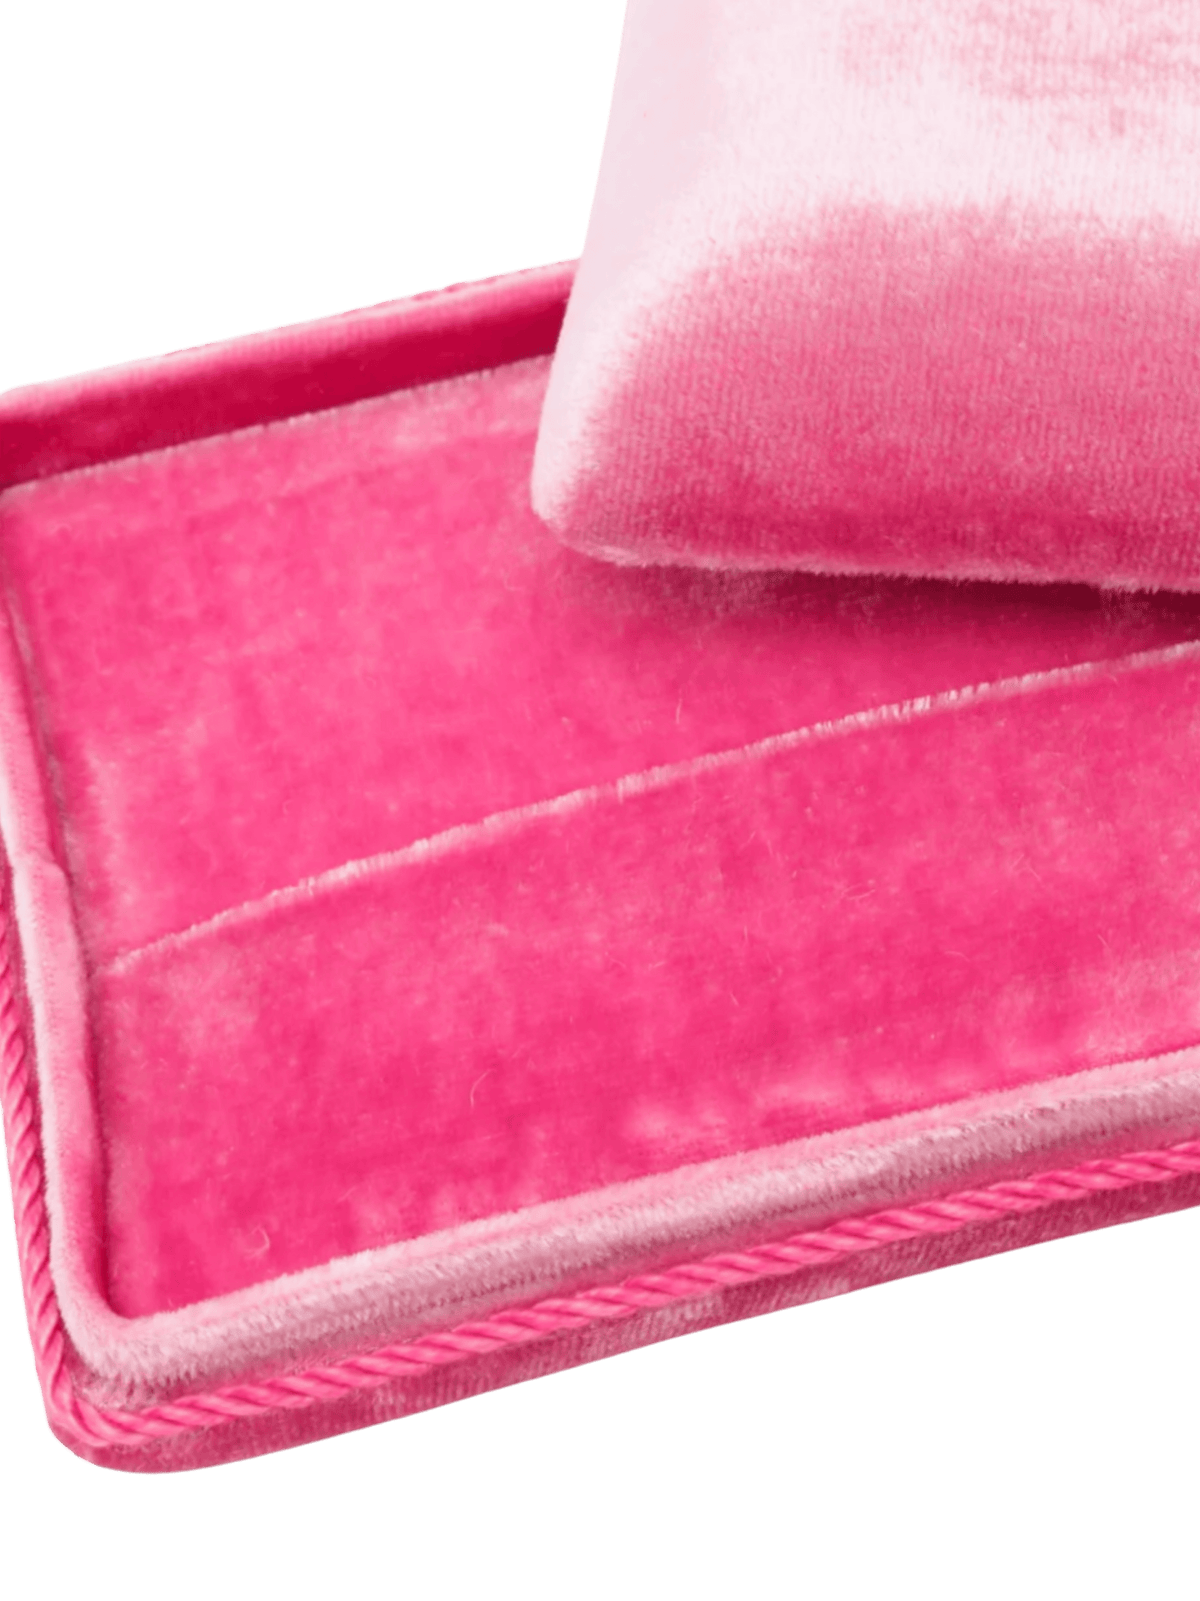 Velvet Box / Pink Womens Sophie Bille Brahe 